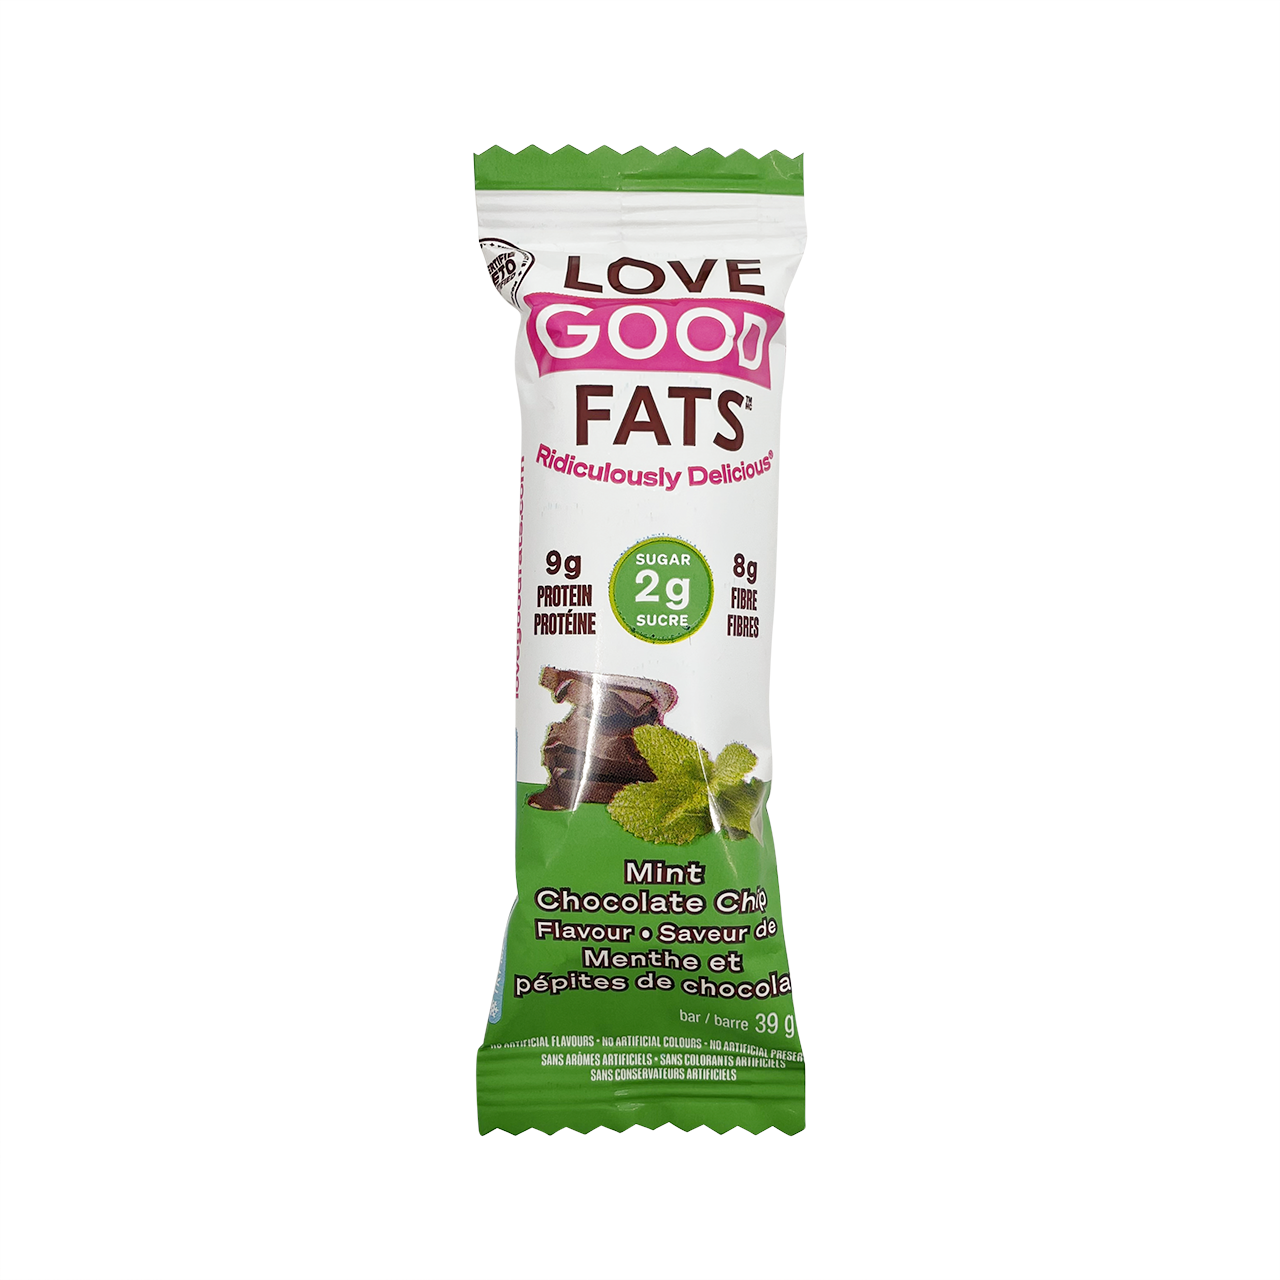 Barre tendre saveur de menthe et pépites de chocolats - Love Goods Fats